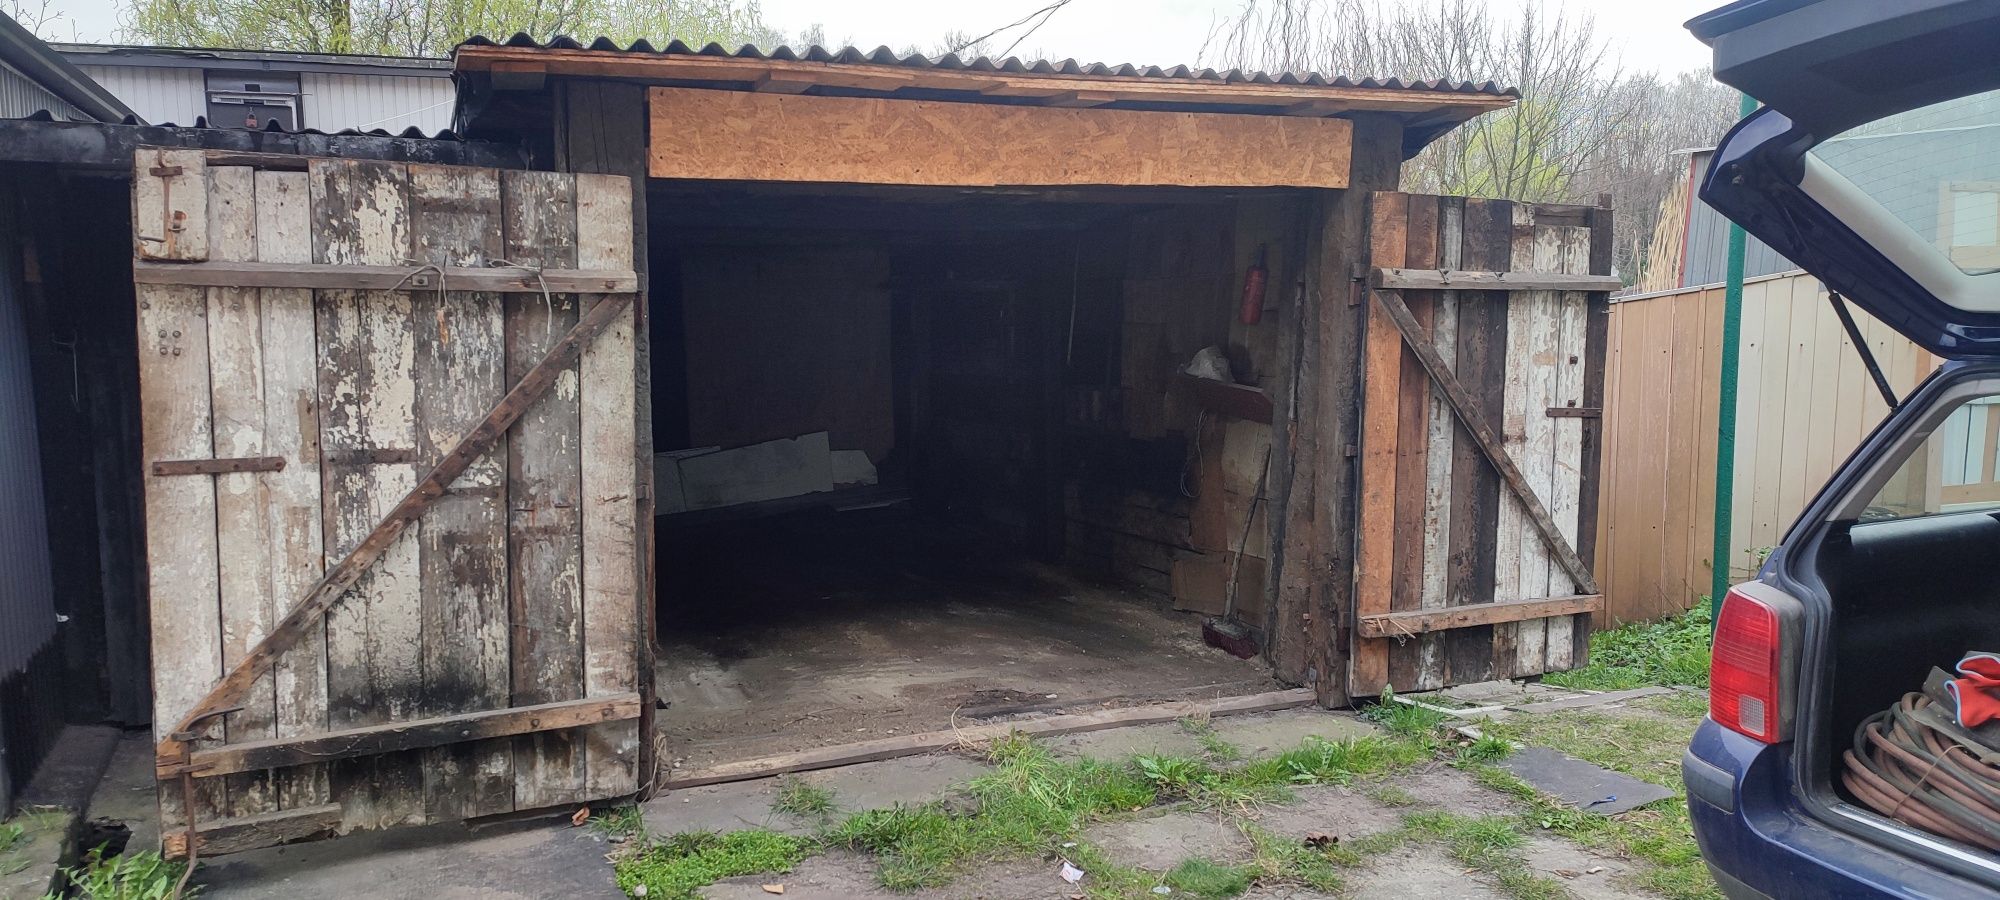 Garaż do wynajęcia drewniany